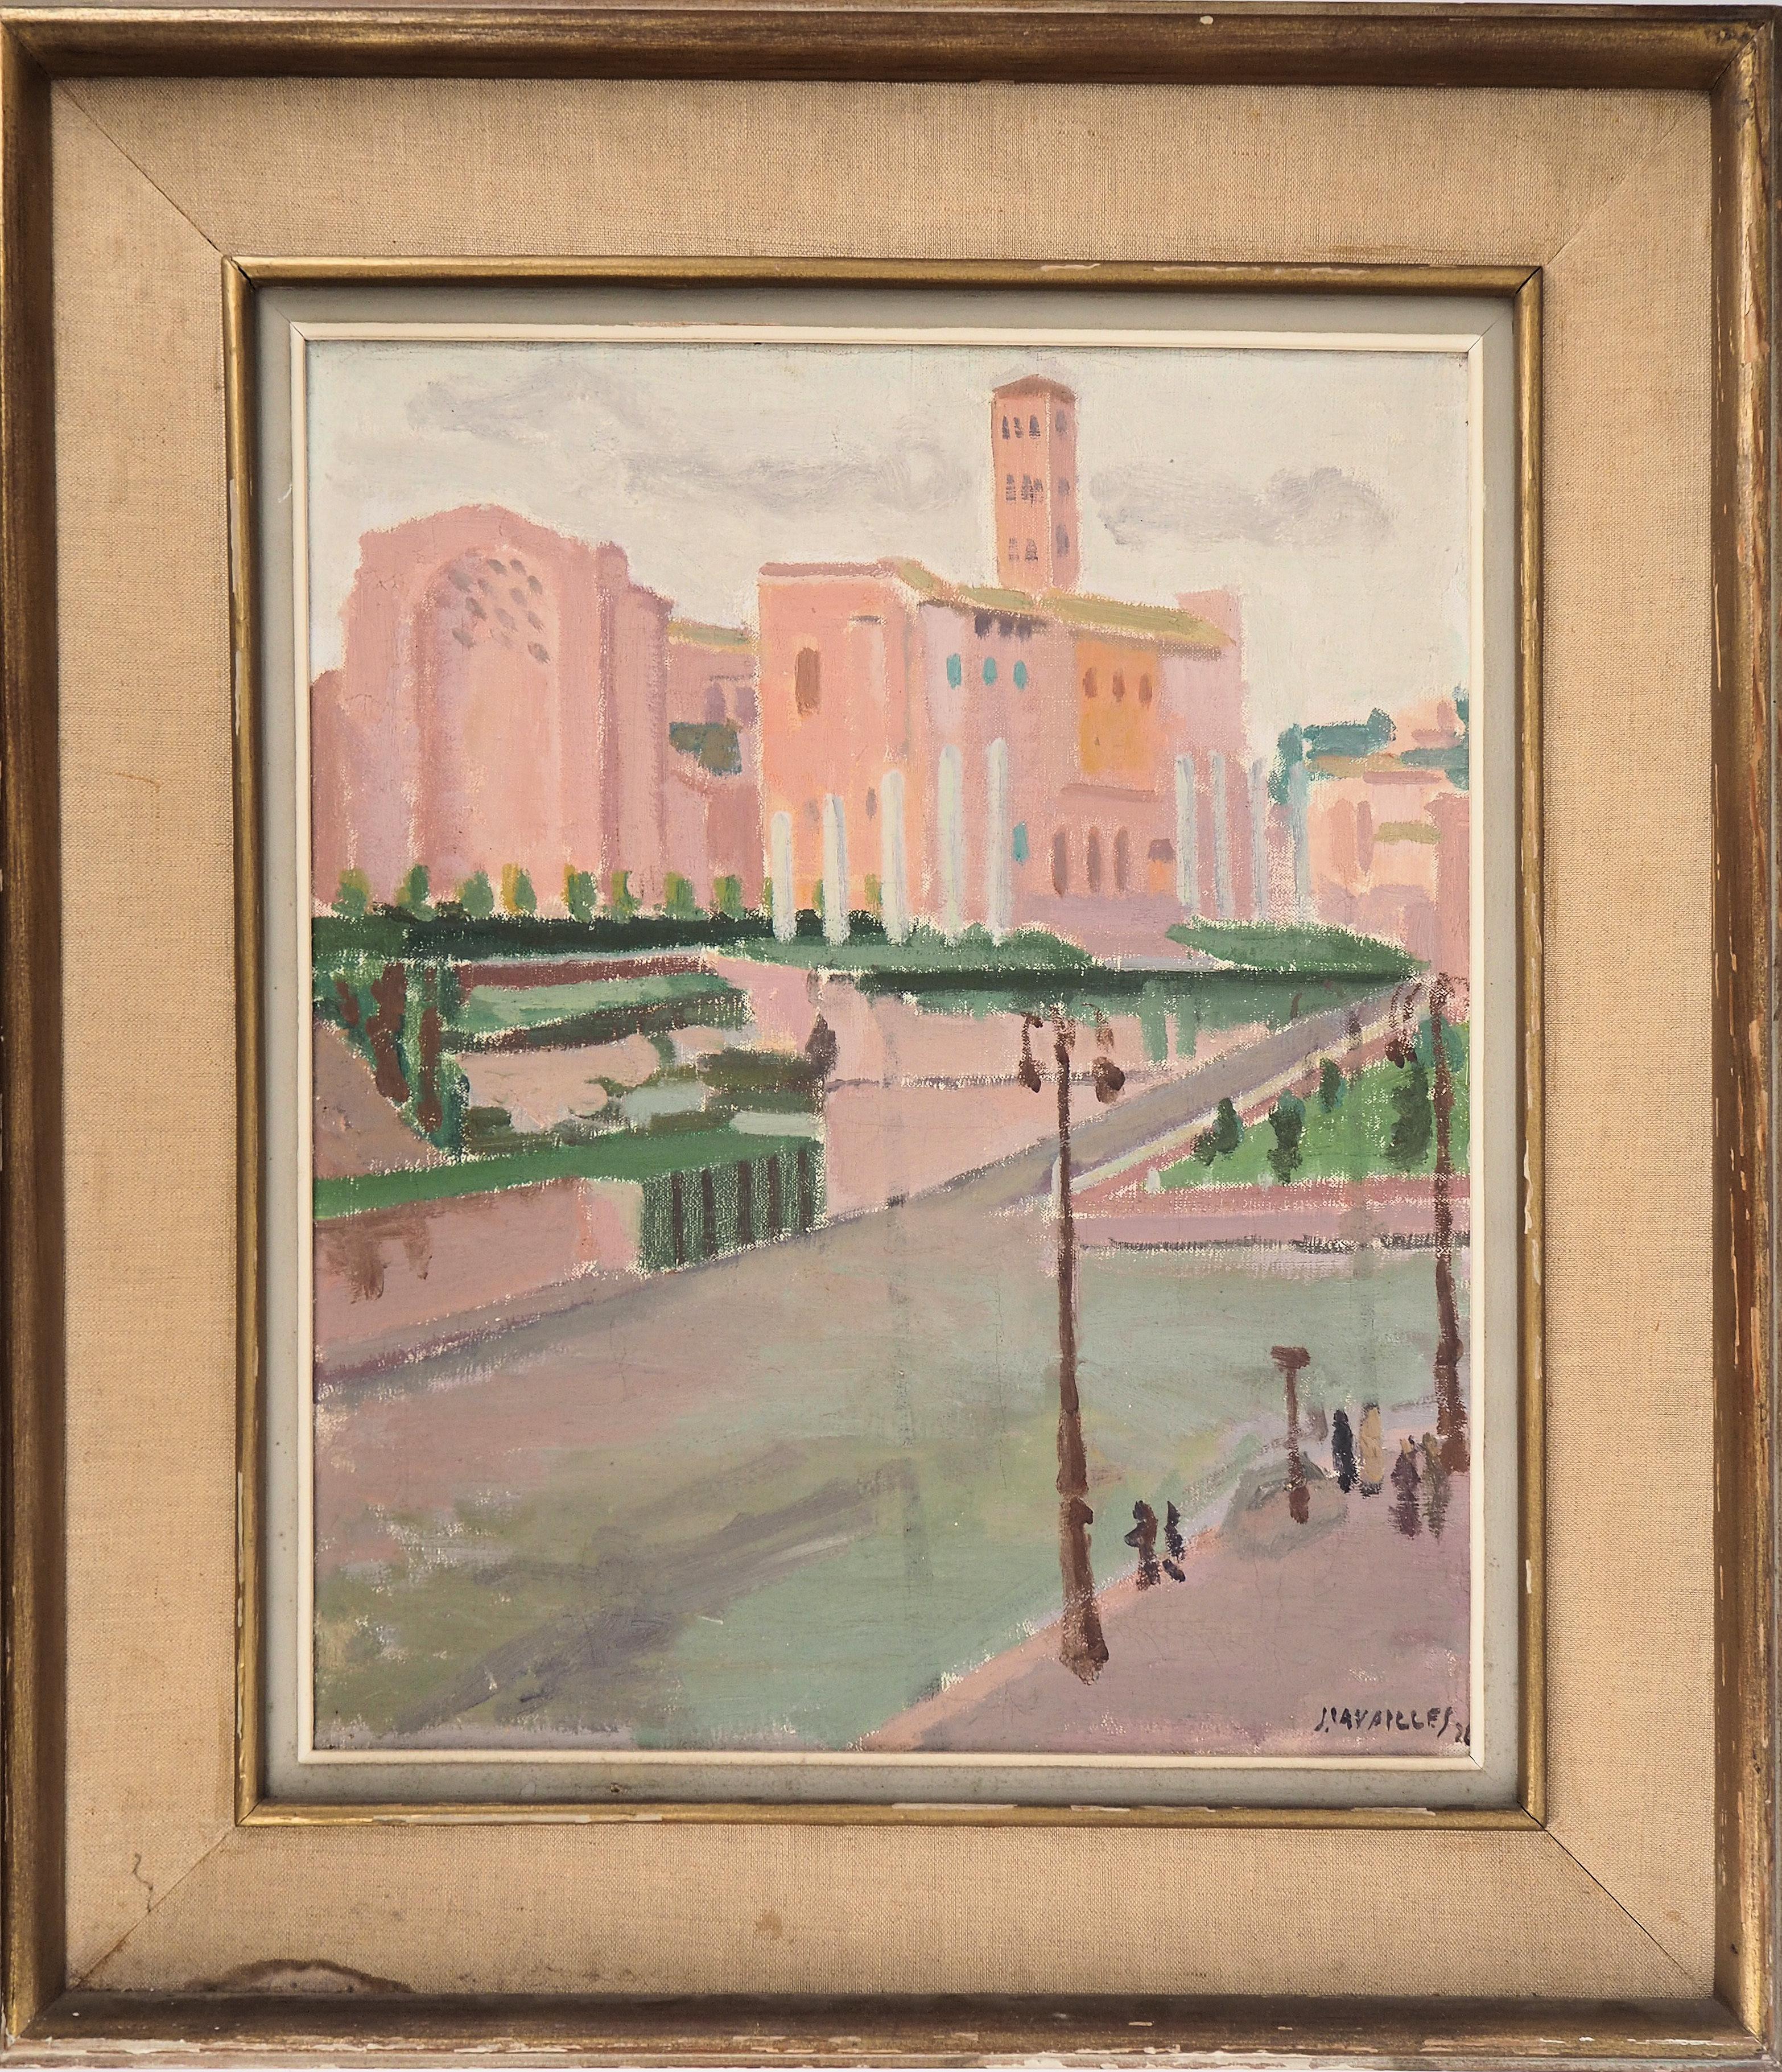 Landscape Painting Jules Cavailles - Rome, The Forum Seen From the Colosseum - Huile originale sur toile, signée